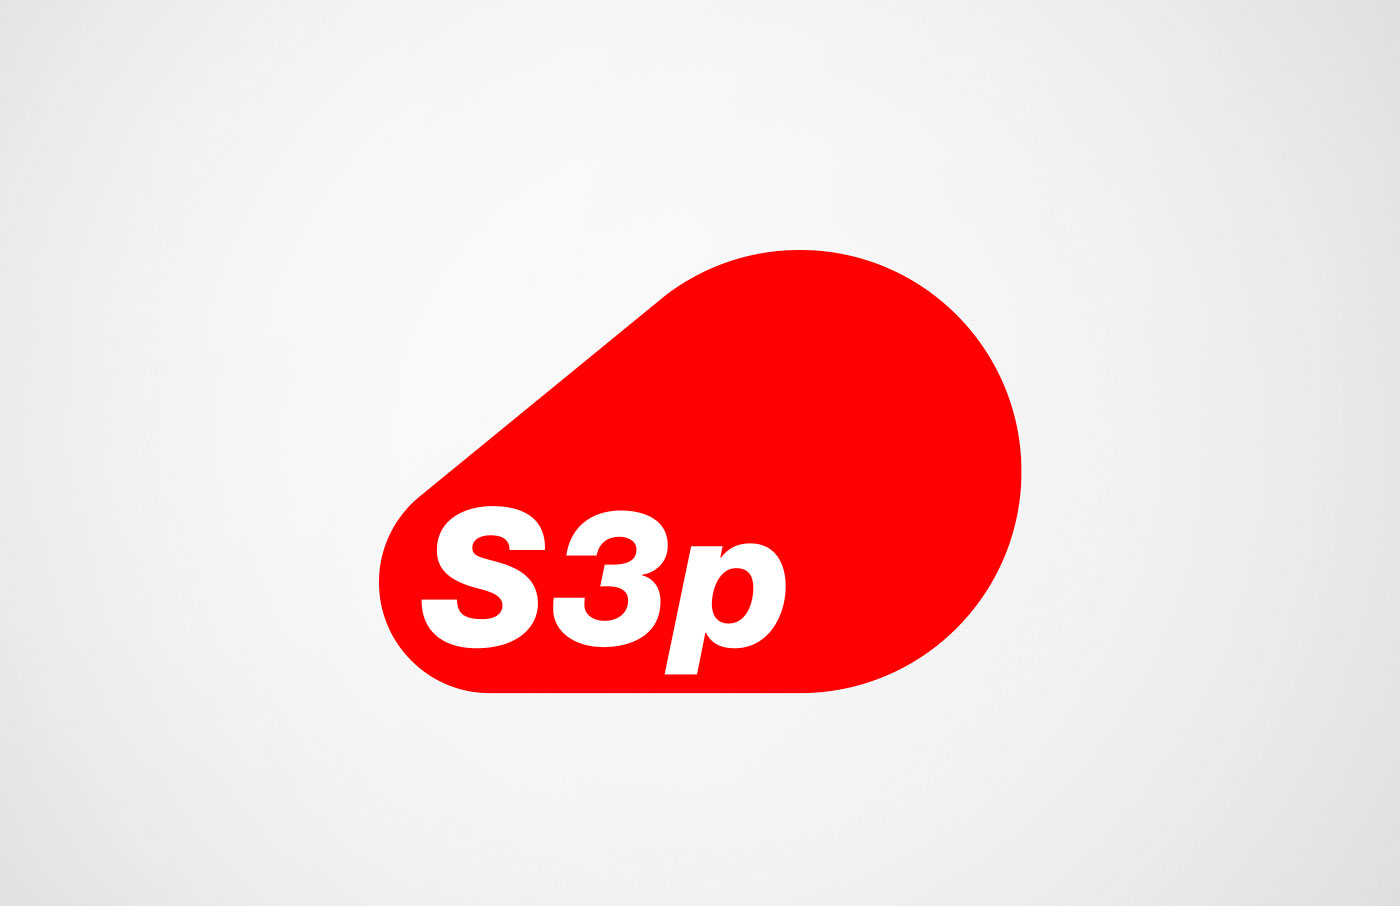 International geschützte Wort-Bild-Marke für die S3p-Technologie